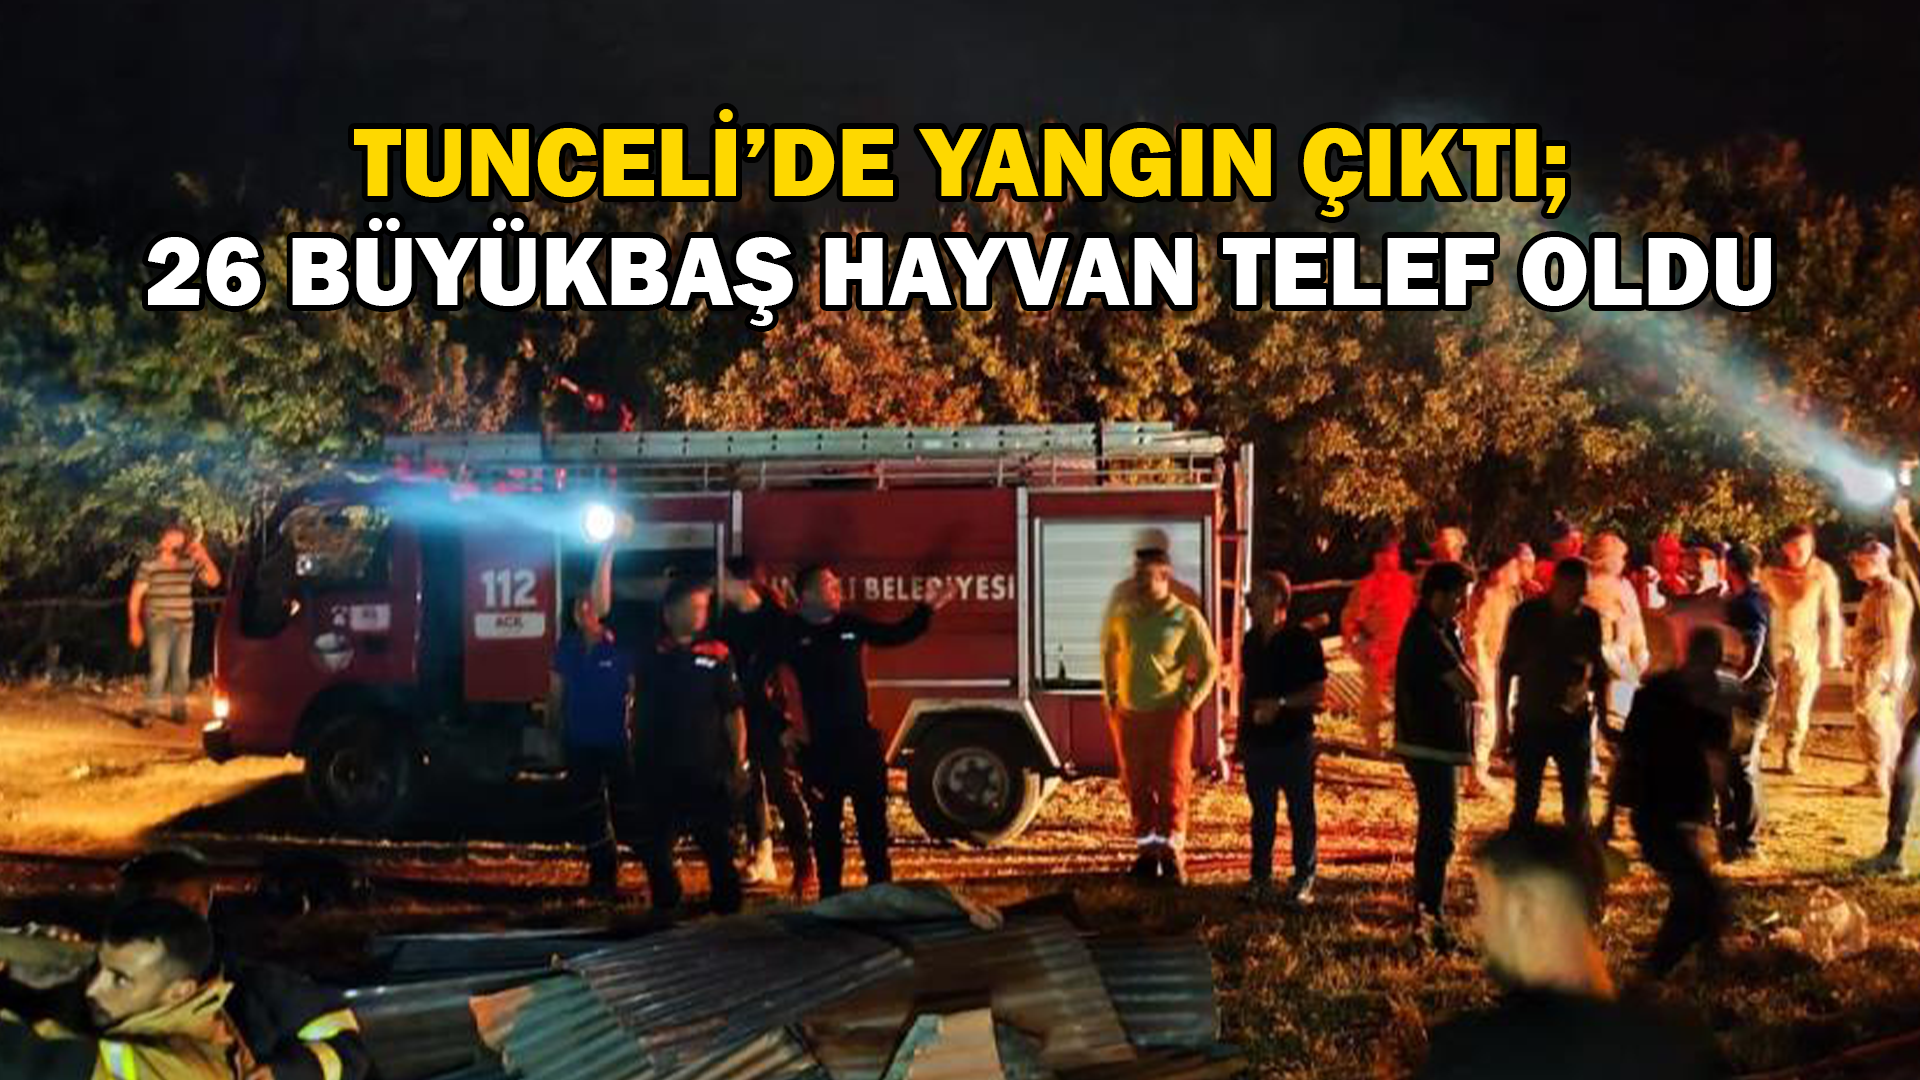 Tunceli’deki yangında 26 büyükbaş hayvan telef oldu